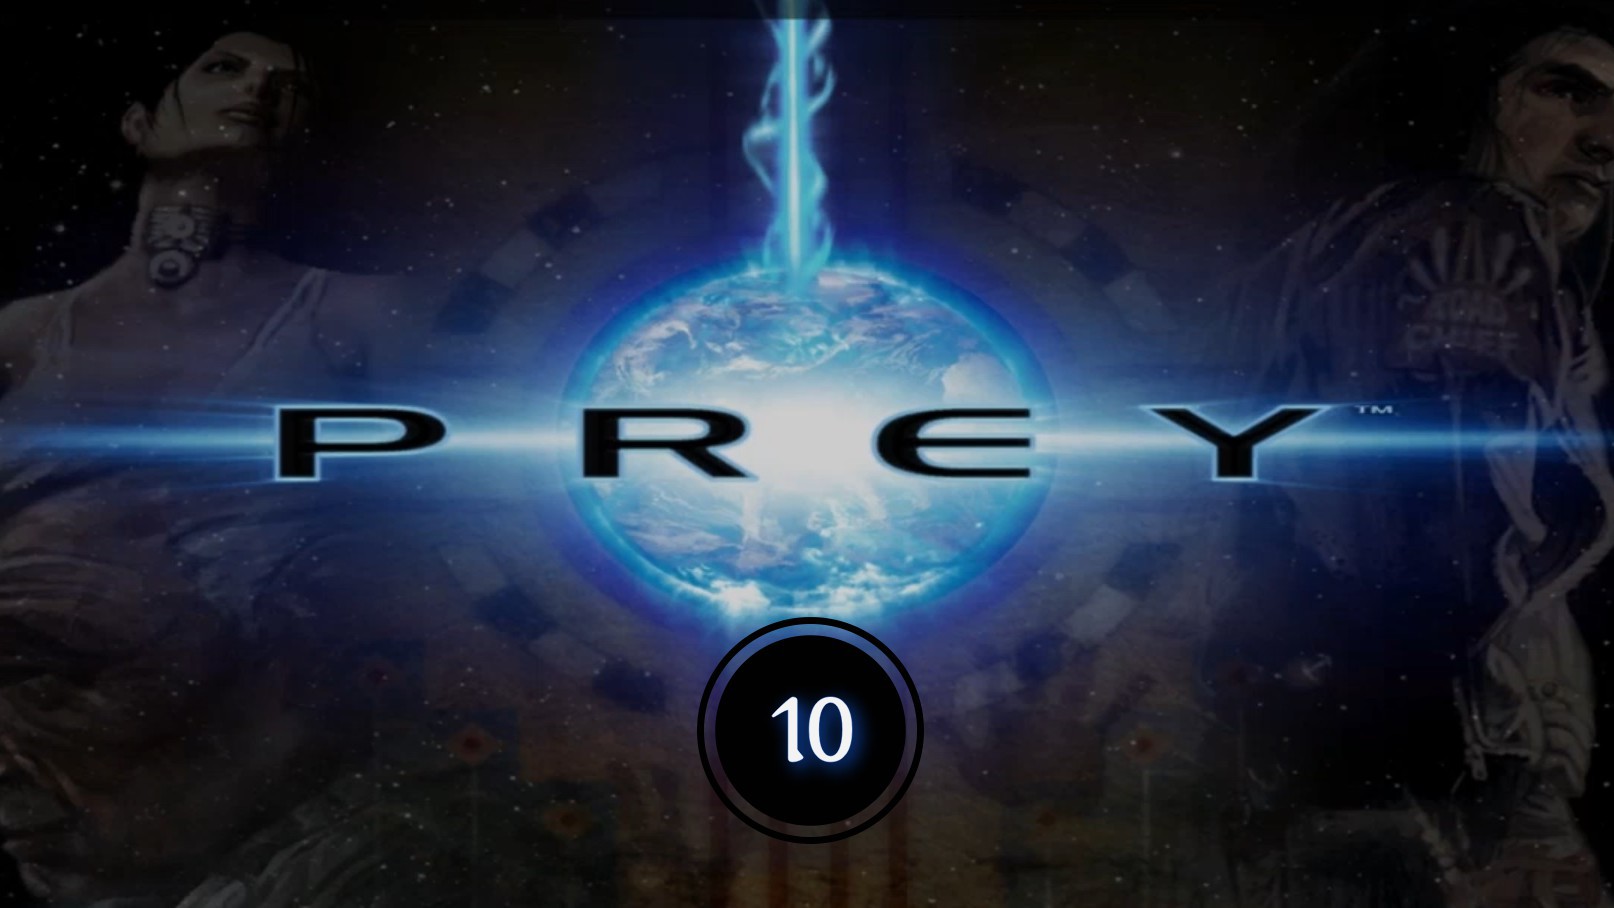 Prey (2006) 10